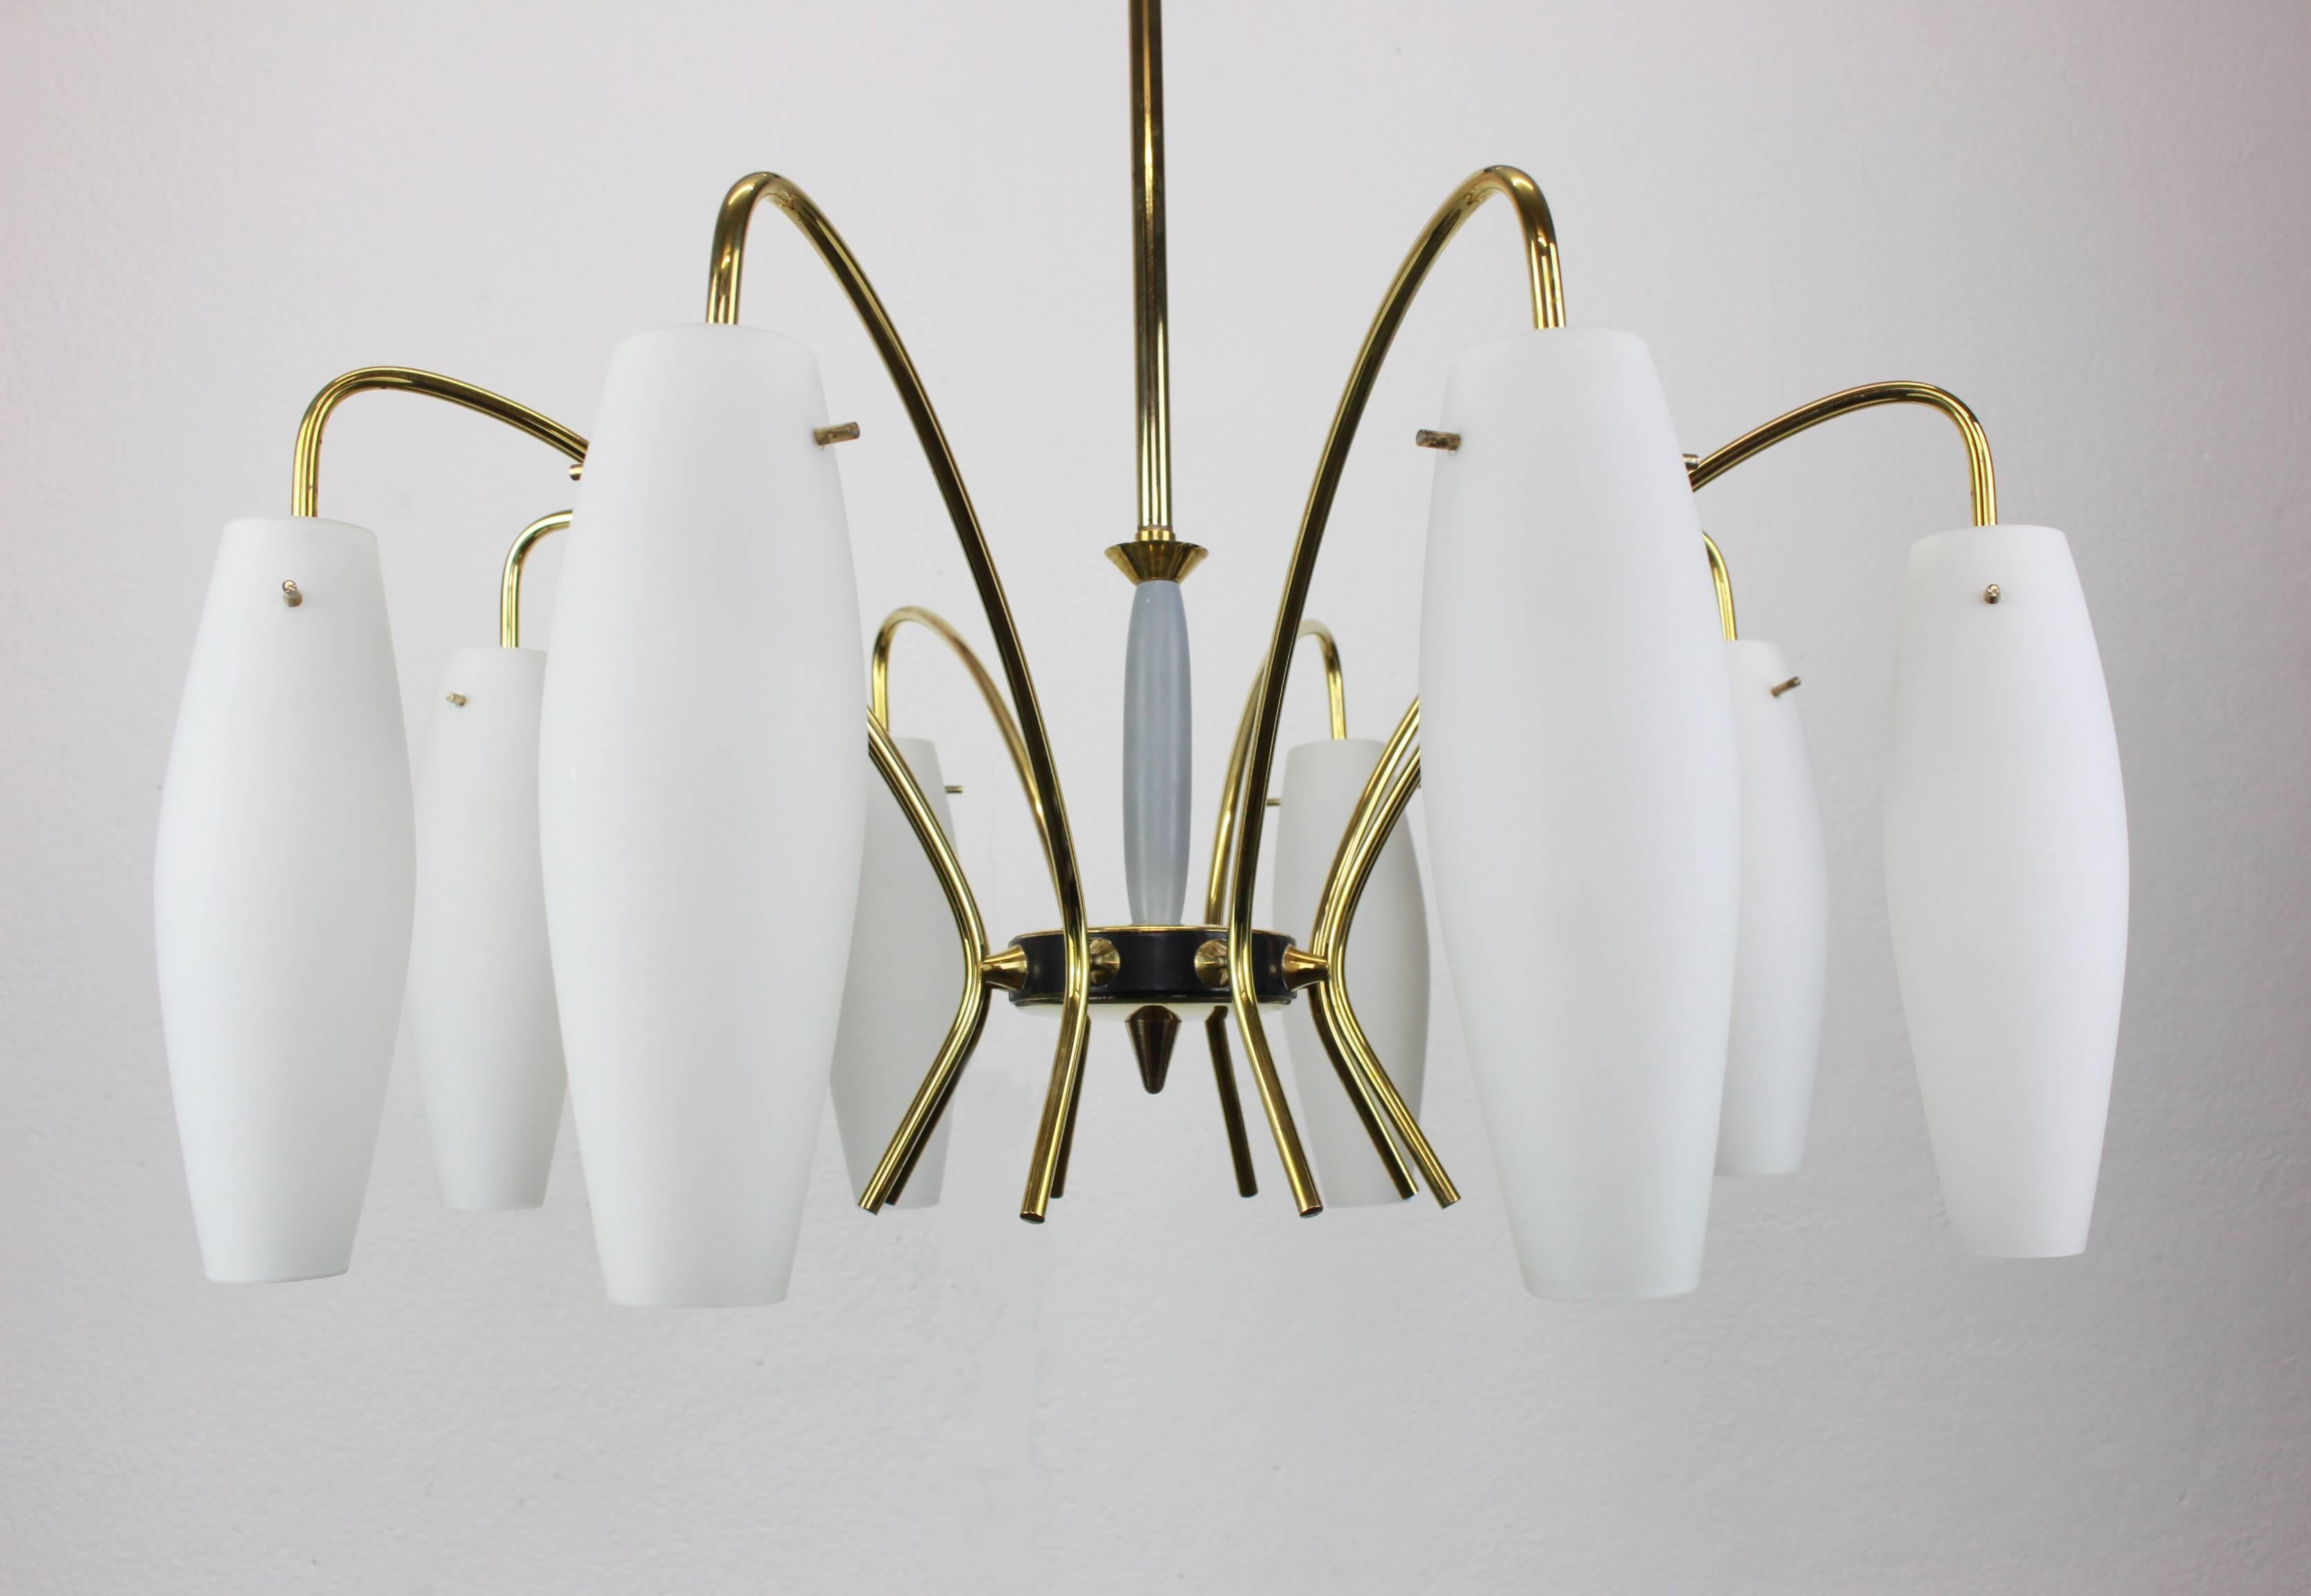 Un lustre étonnant à huit lumières à la manière de Stilnovo, Italie, fabriqué vers 1950-1959. Une pièce faite à la main et de grande qualité.

De haute qualité et en très bon état. Nettoyé, bien câblé et prêt à être utilisé. 

Le luminaire